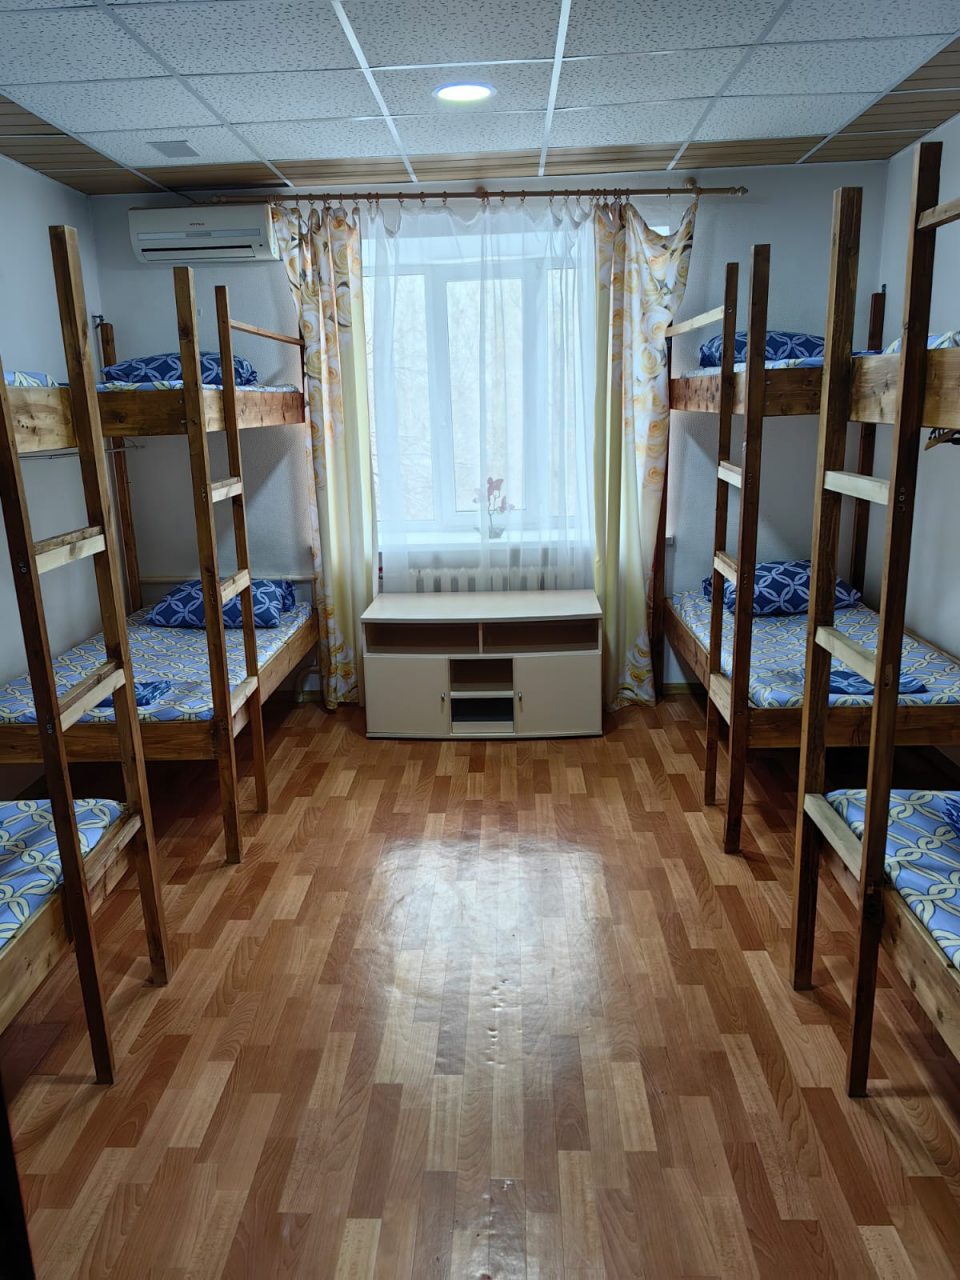 Восьмиместный (Койко-место в комнате на 8 человек) хостела Инь-Янь, Тюмень